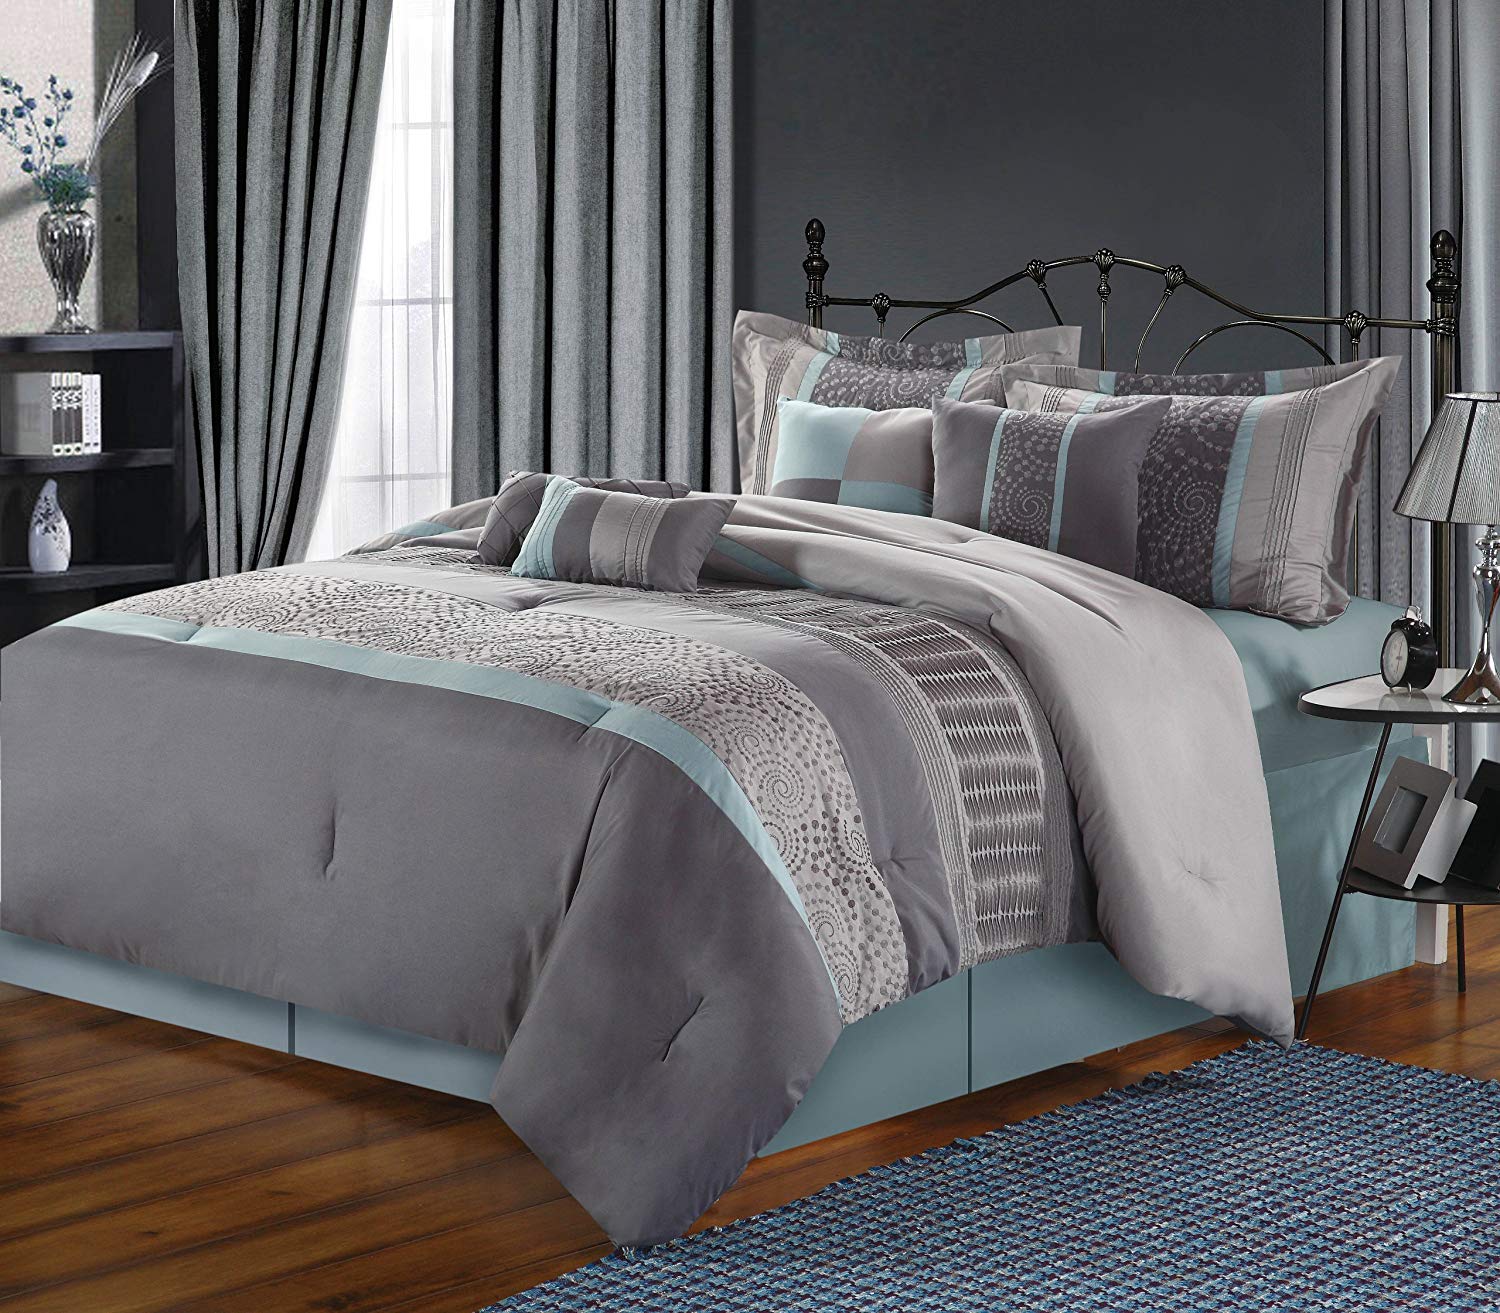 Untuk Kesan Klasik Elegan, Gunakan Motif Yang Lebih - Grey And Blue Bed Sets , HD Wallpaper & Backgrounds